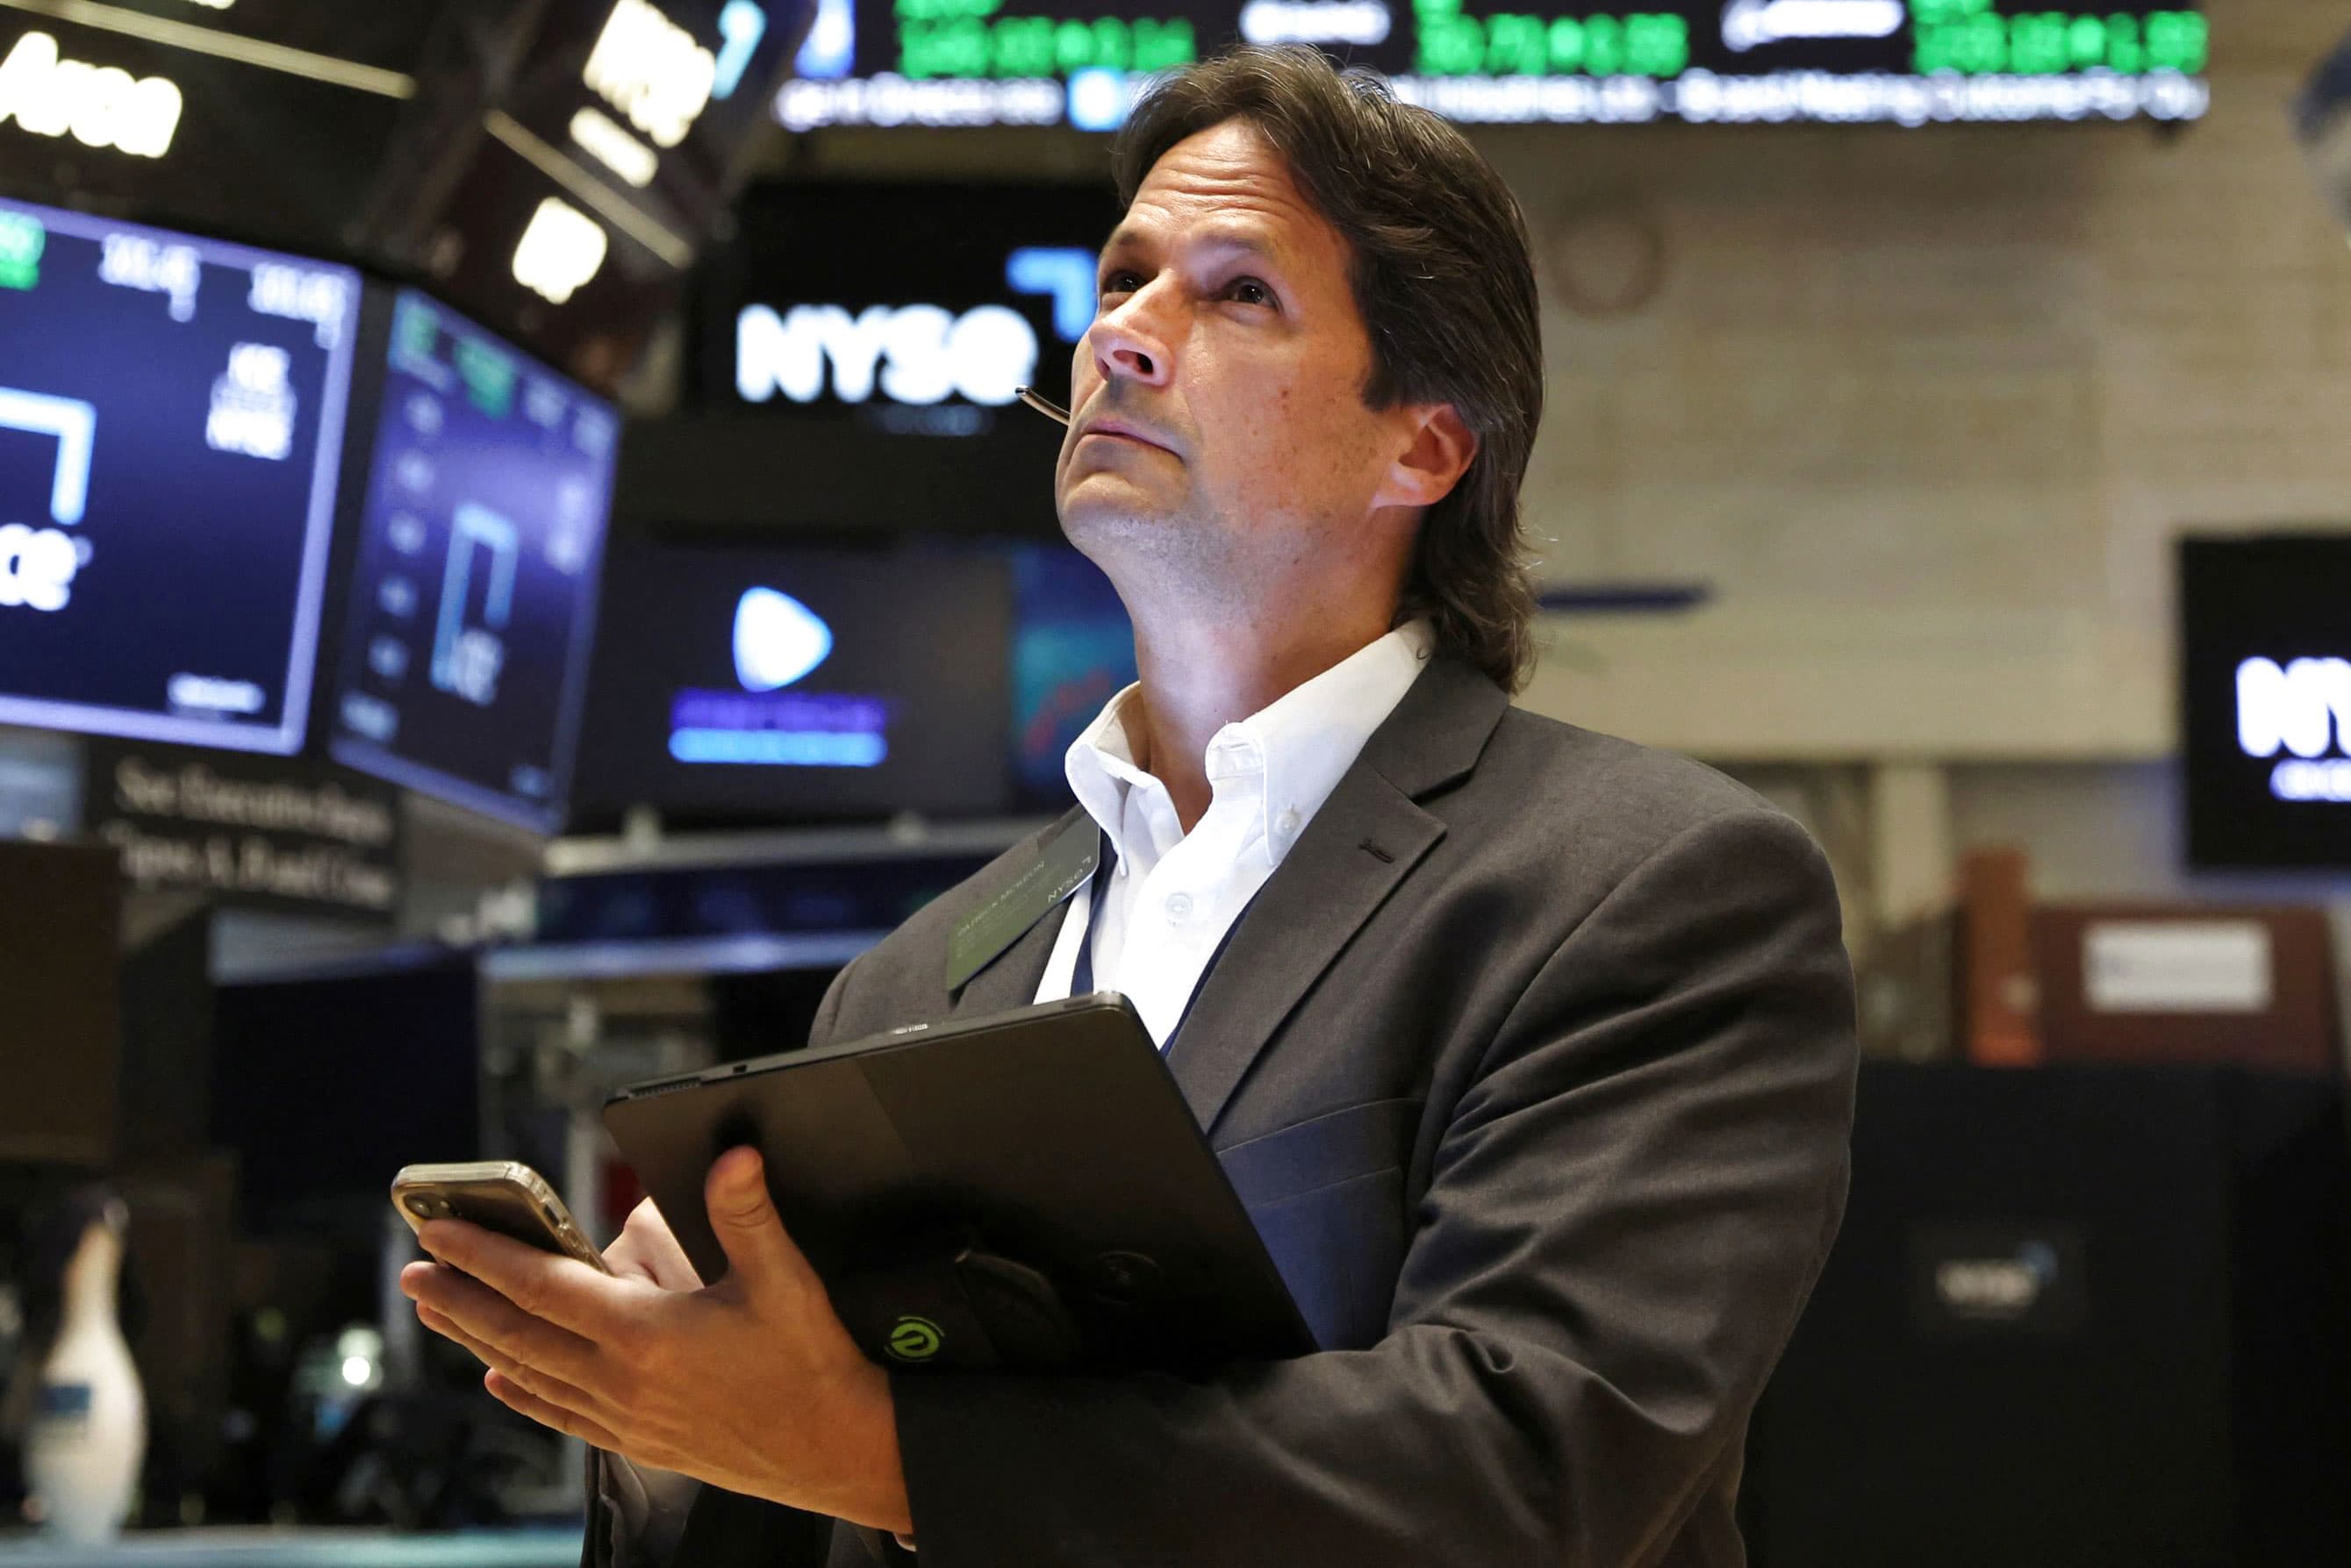 Aandelenfutures veranderden weinig toen Wall Street oog in oog stond met drukke winstweek: live updates